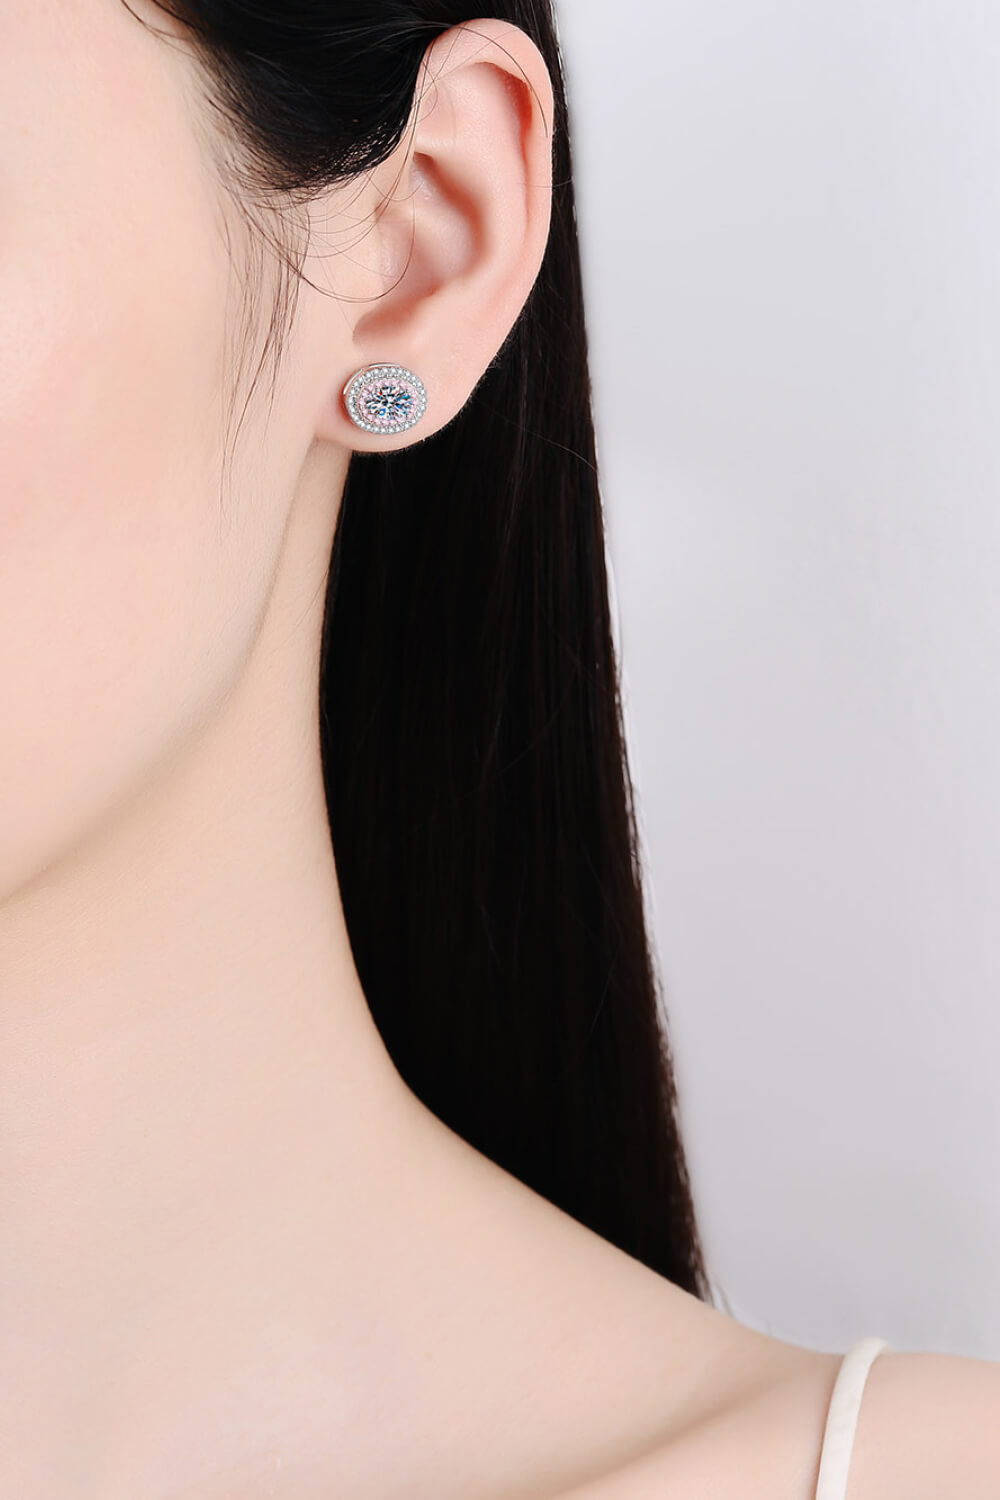 Platinum-Plated Moissanite Stud Earrings - bertofonsi